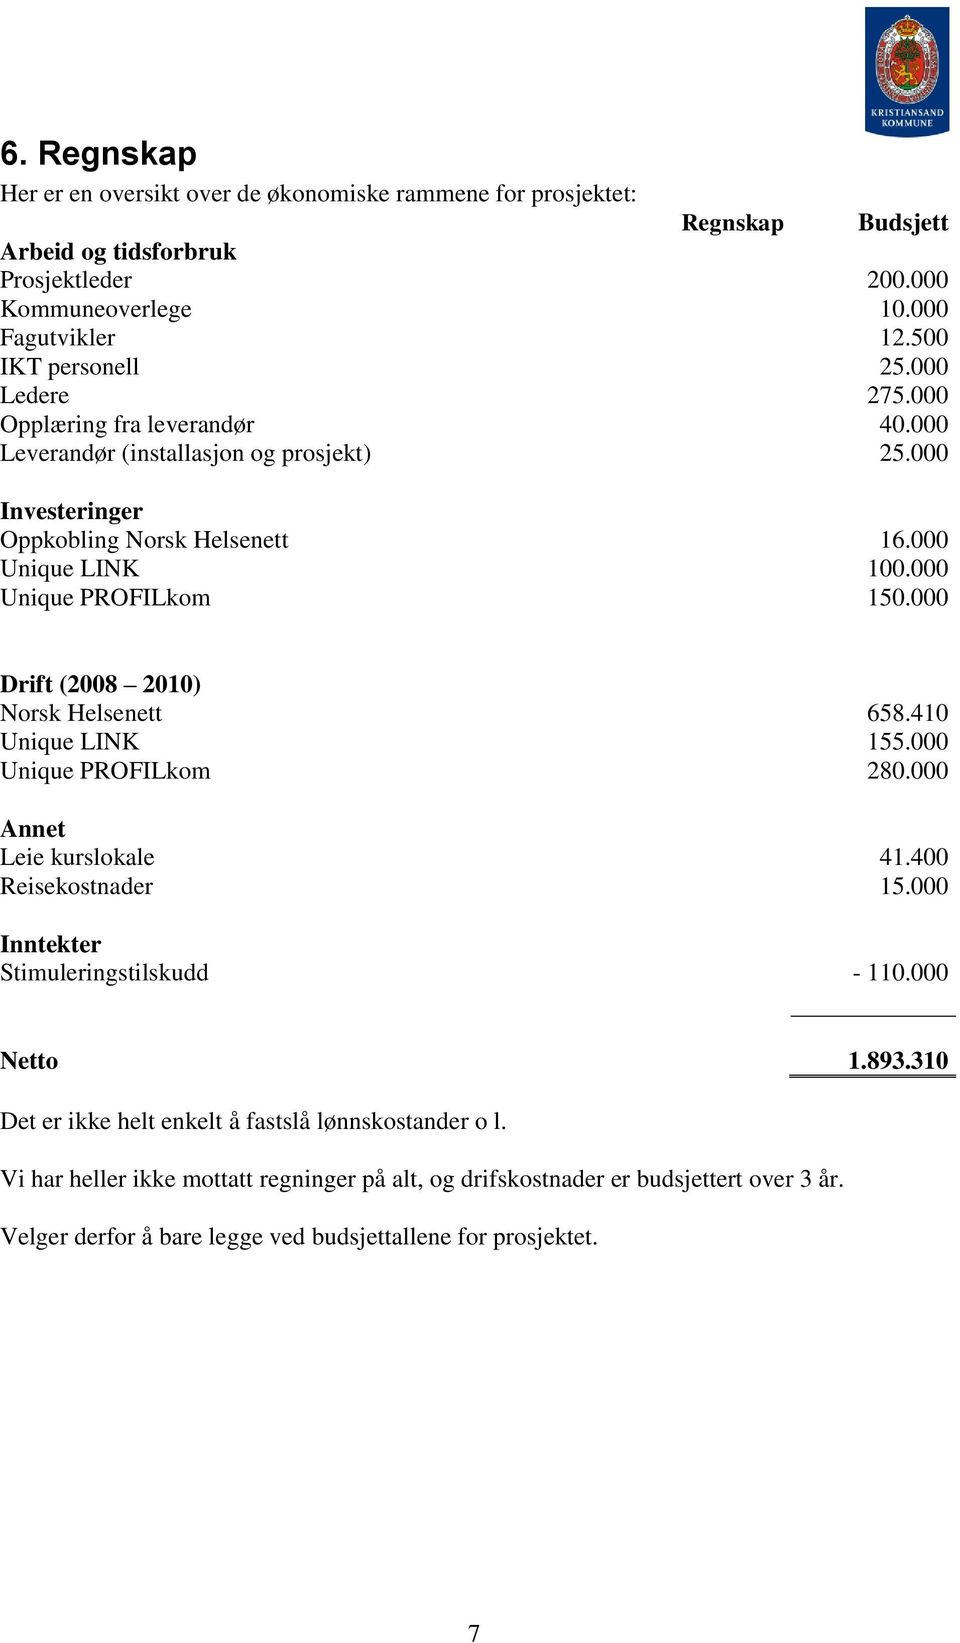 000 Drift (2008 2010) Norsk Helsenett 658.410 Unique LINK 155.000 Unique PROFILkom 280.000 Annet Leie kurslokale 41.400 Reisekostnader 15.000 Inntekter Stimuleringstilskudd - 110.000 Netto 1.893.